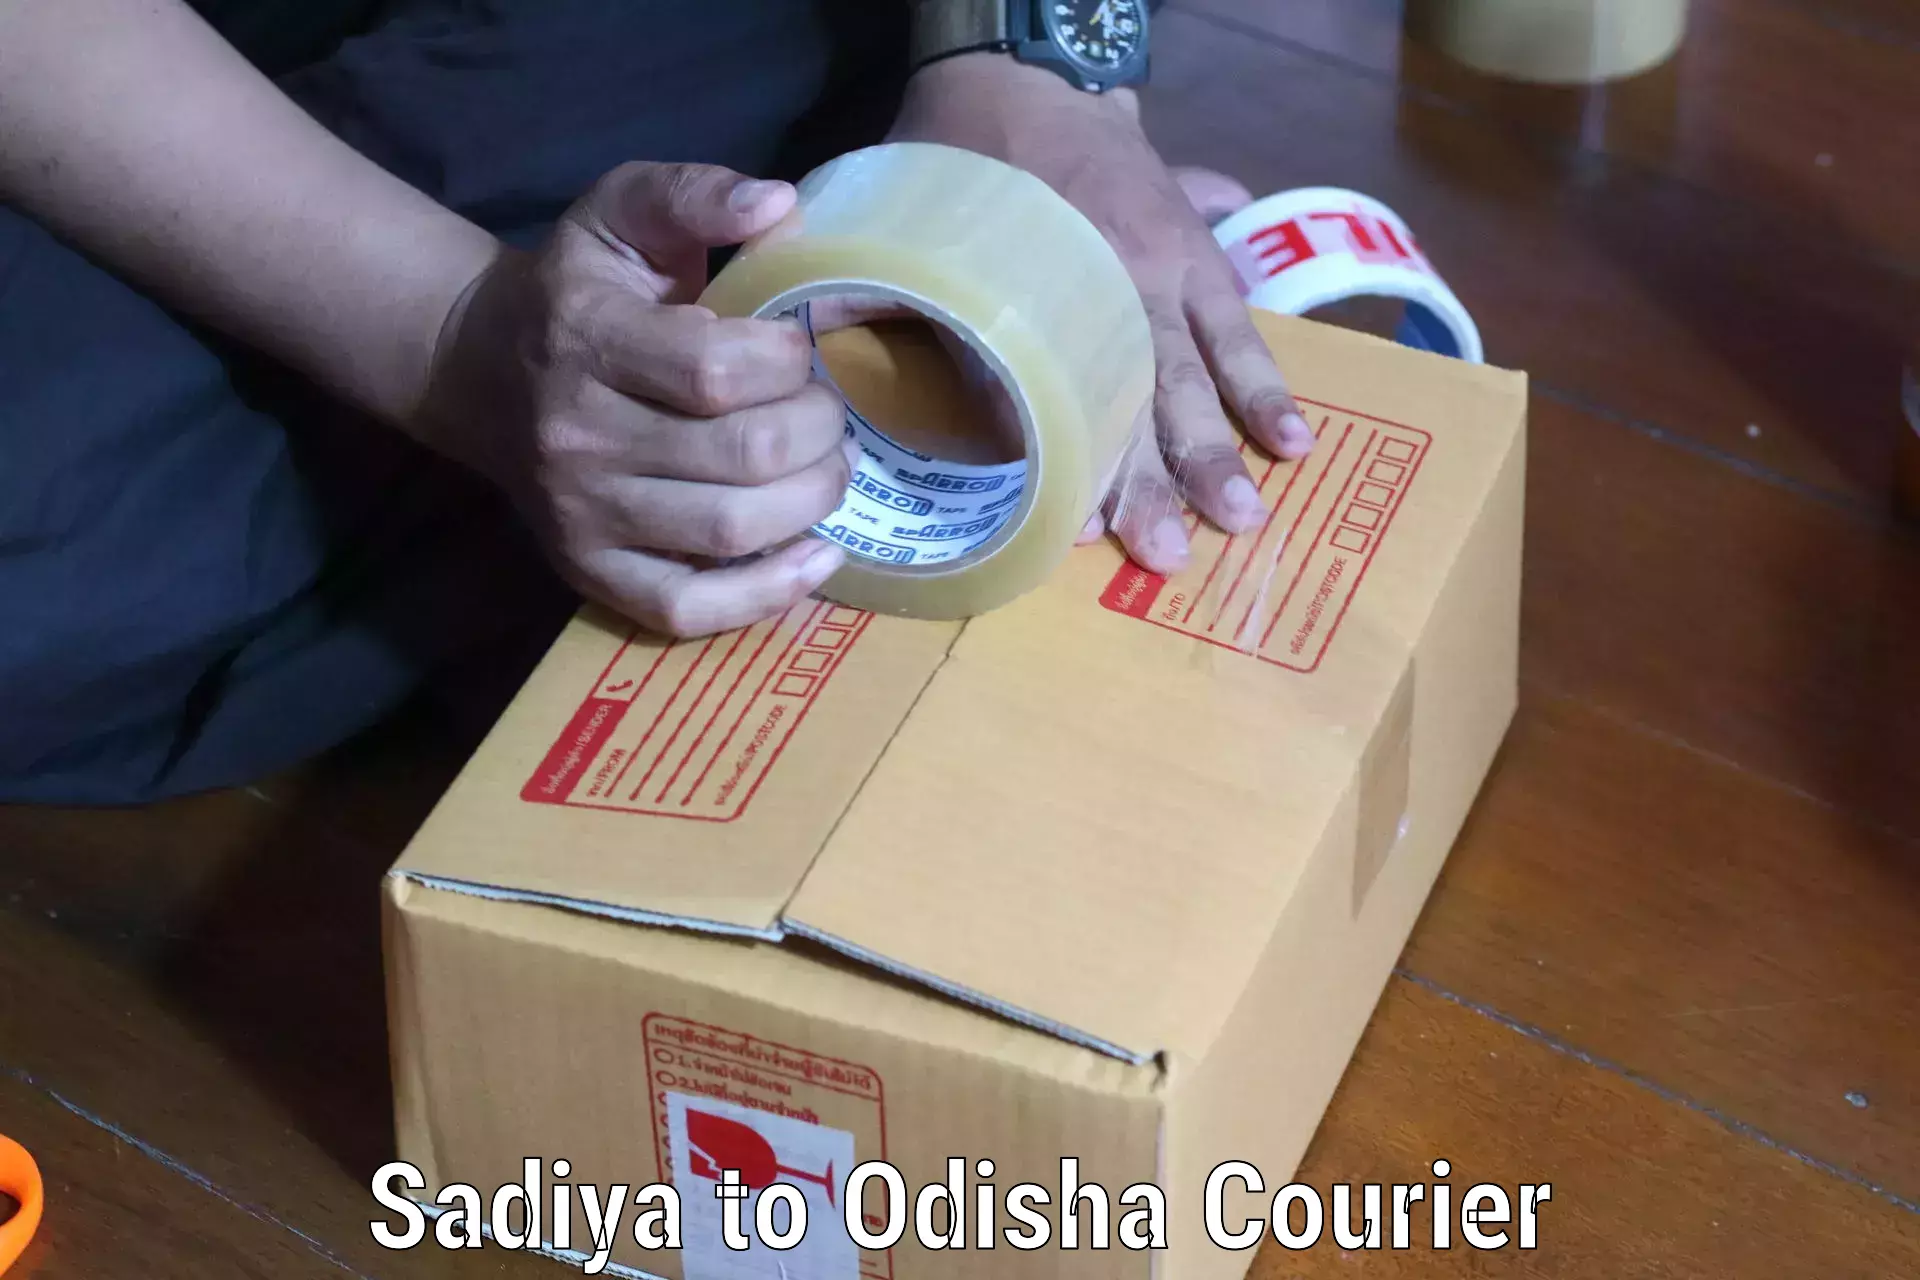 Global delivery options Sadiya to Dhamanagar